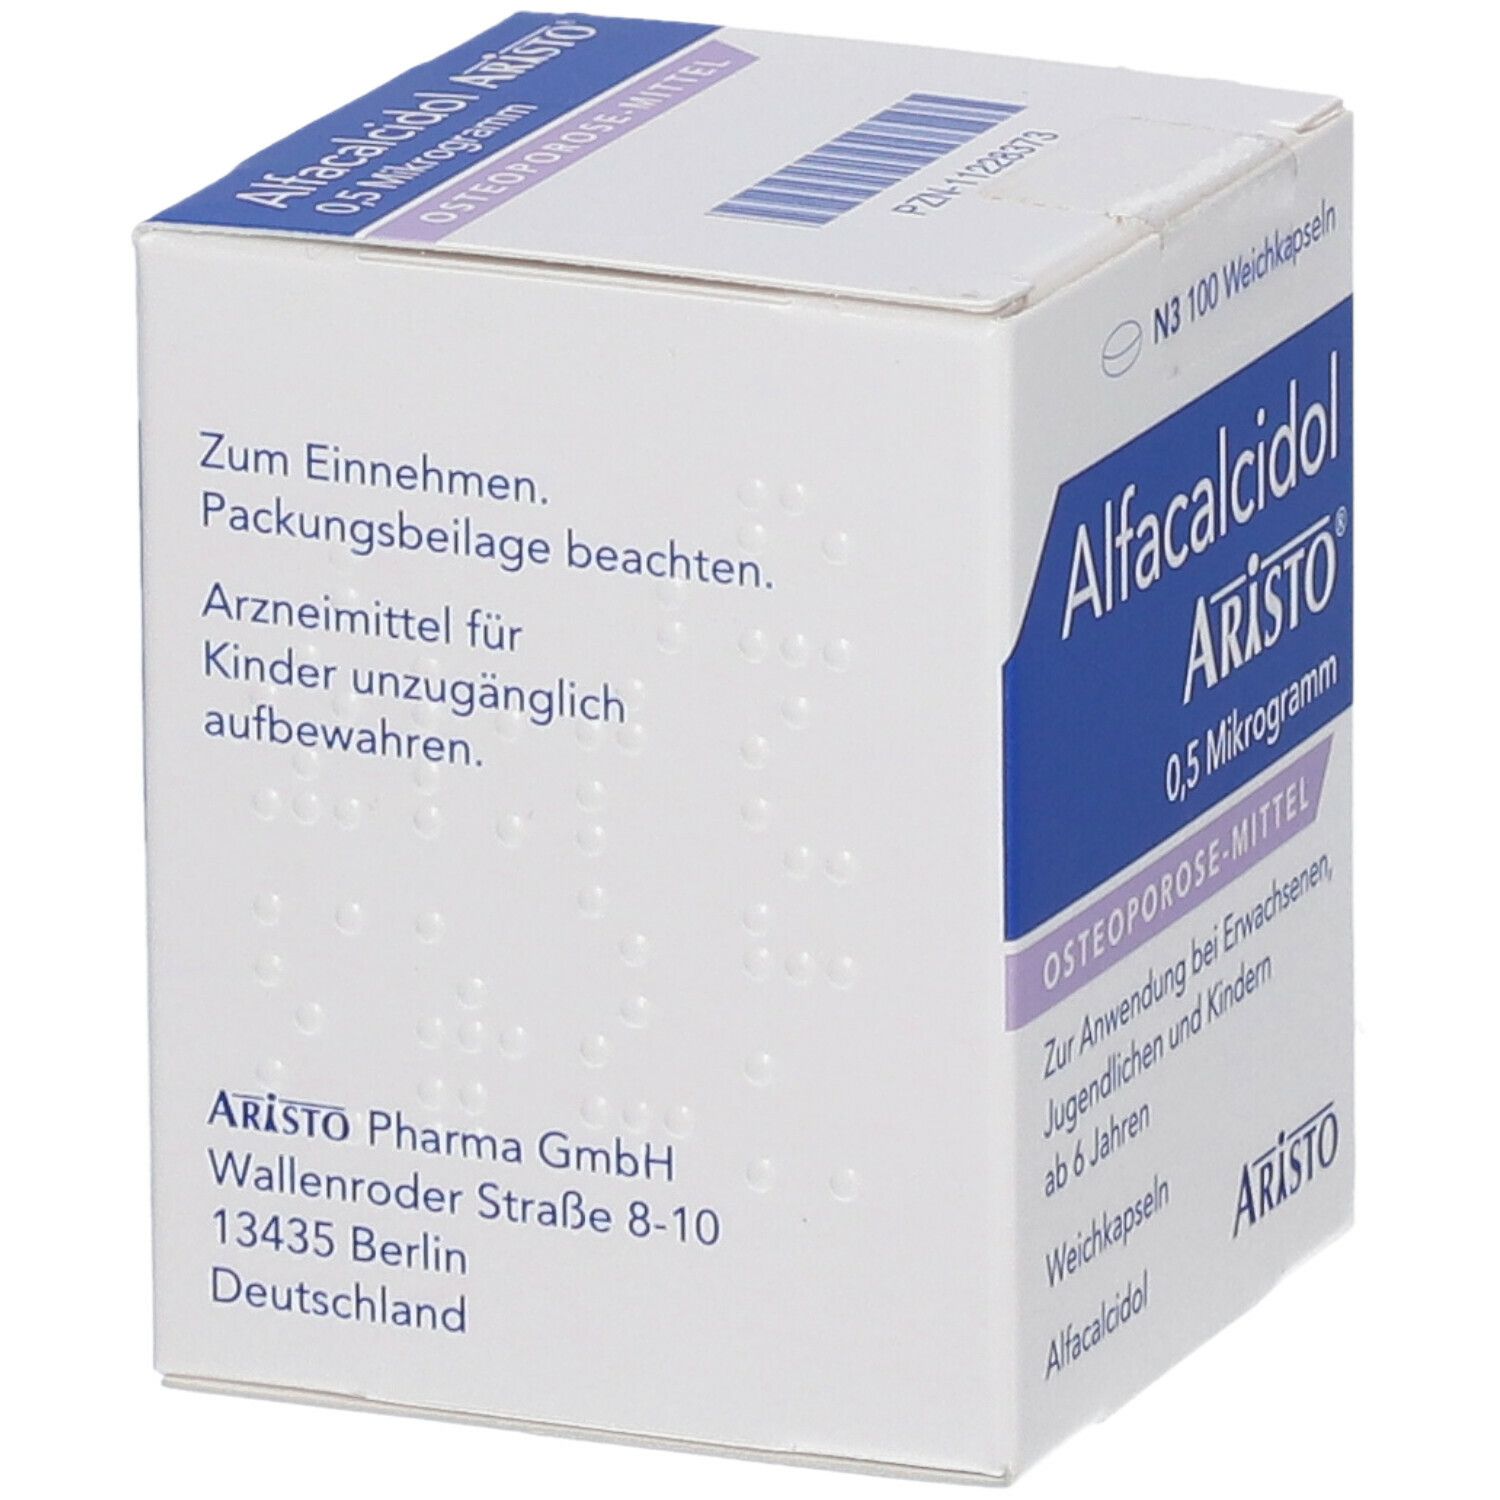 Alfacalcidol Aristo® 0,5 Mikrogramm